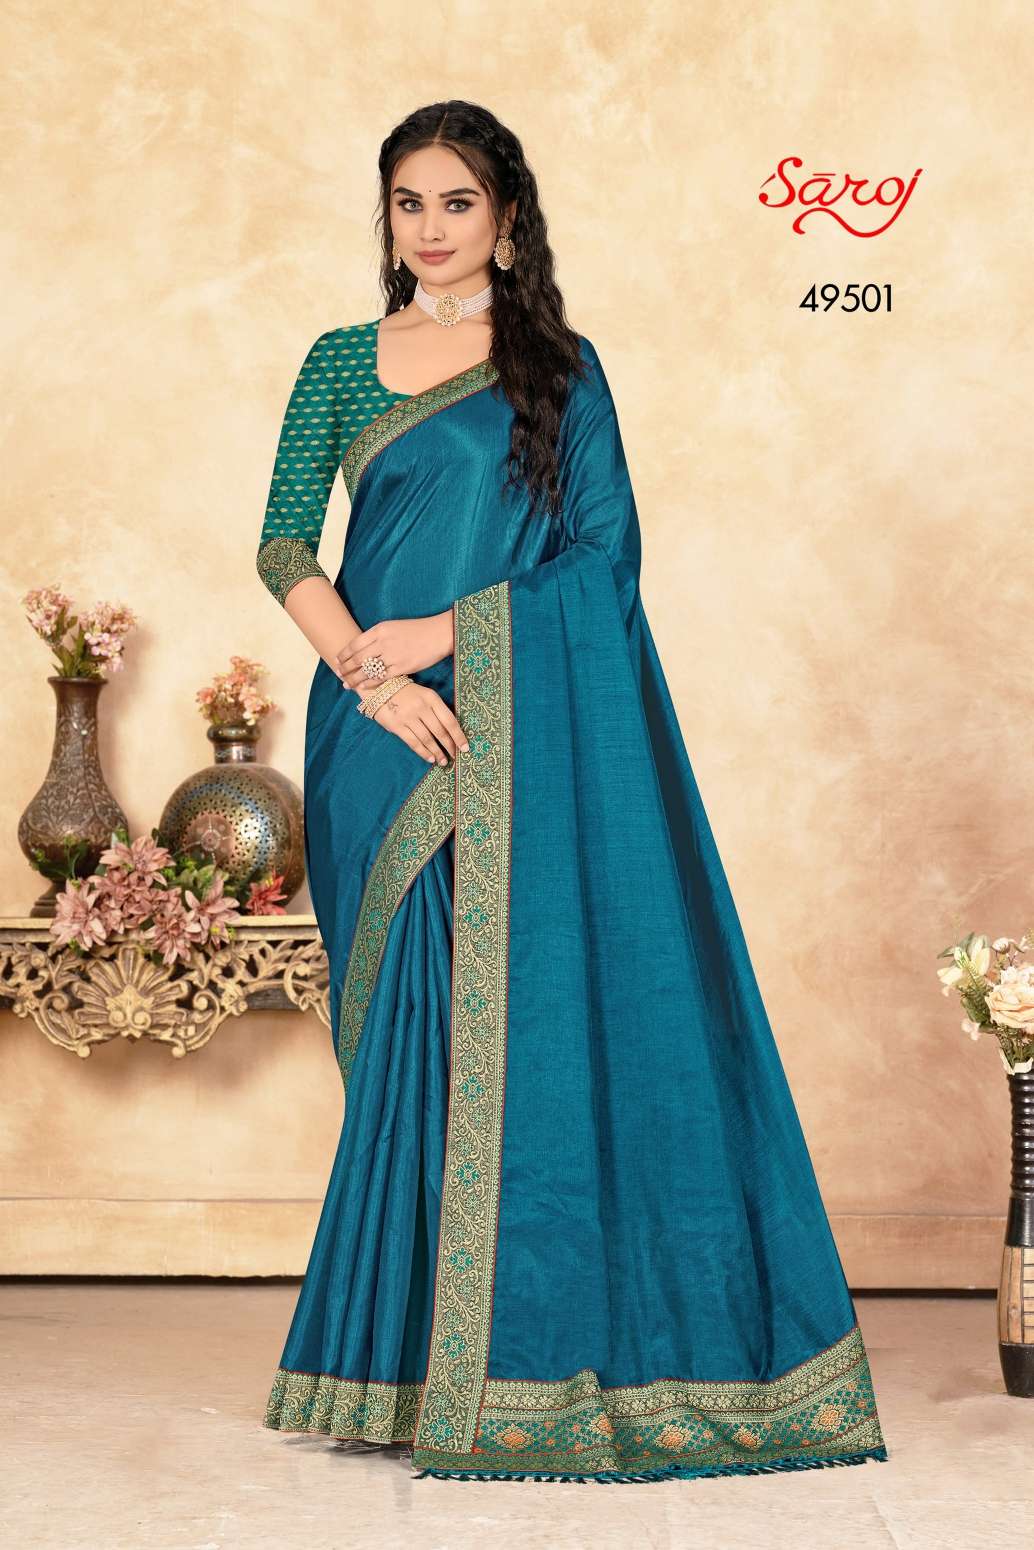 Saroj textile presents Aakshara vol 2 casual sarees catalogue